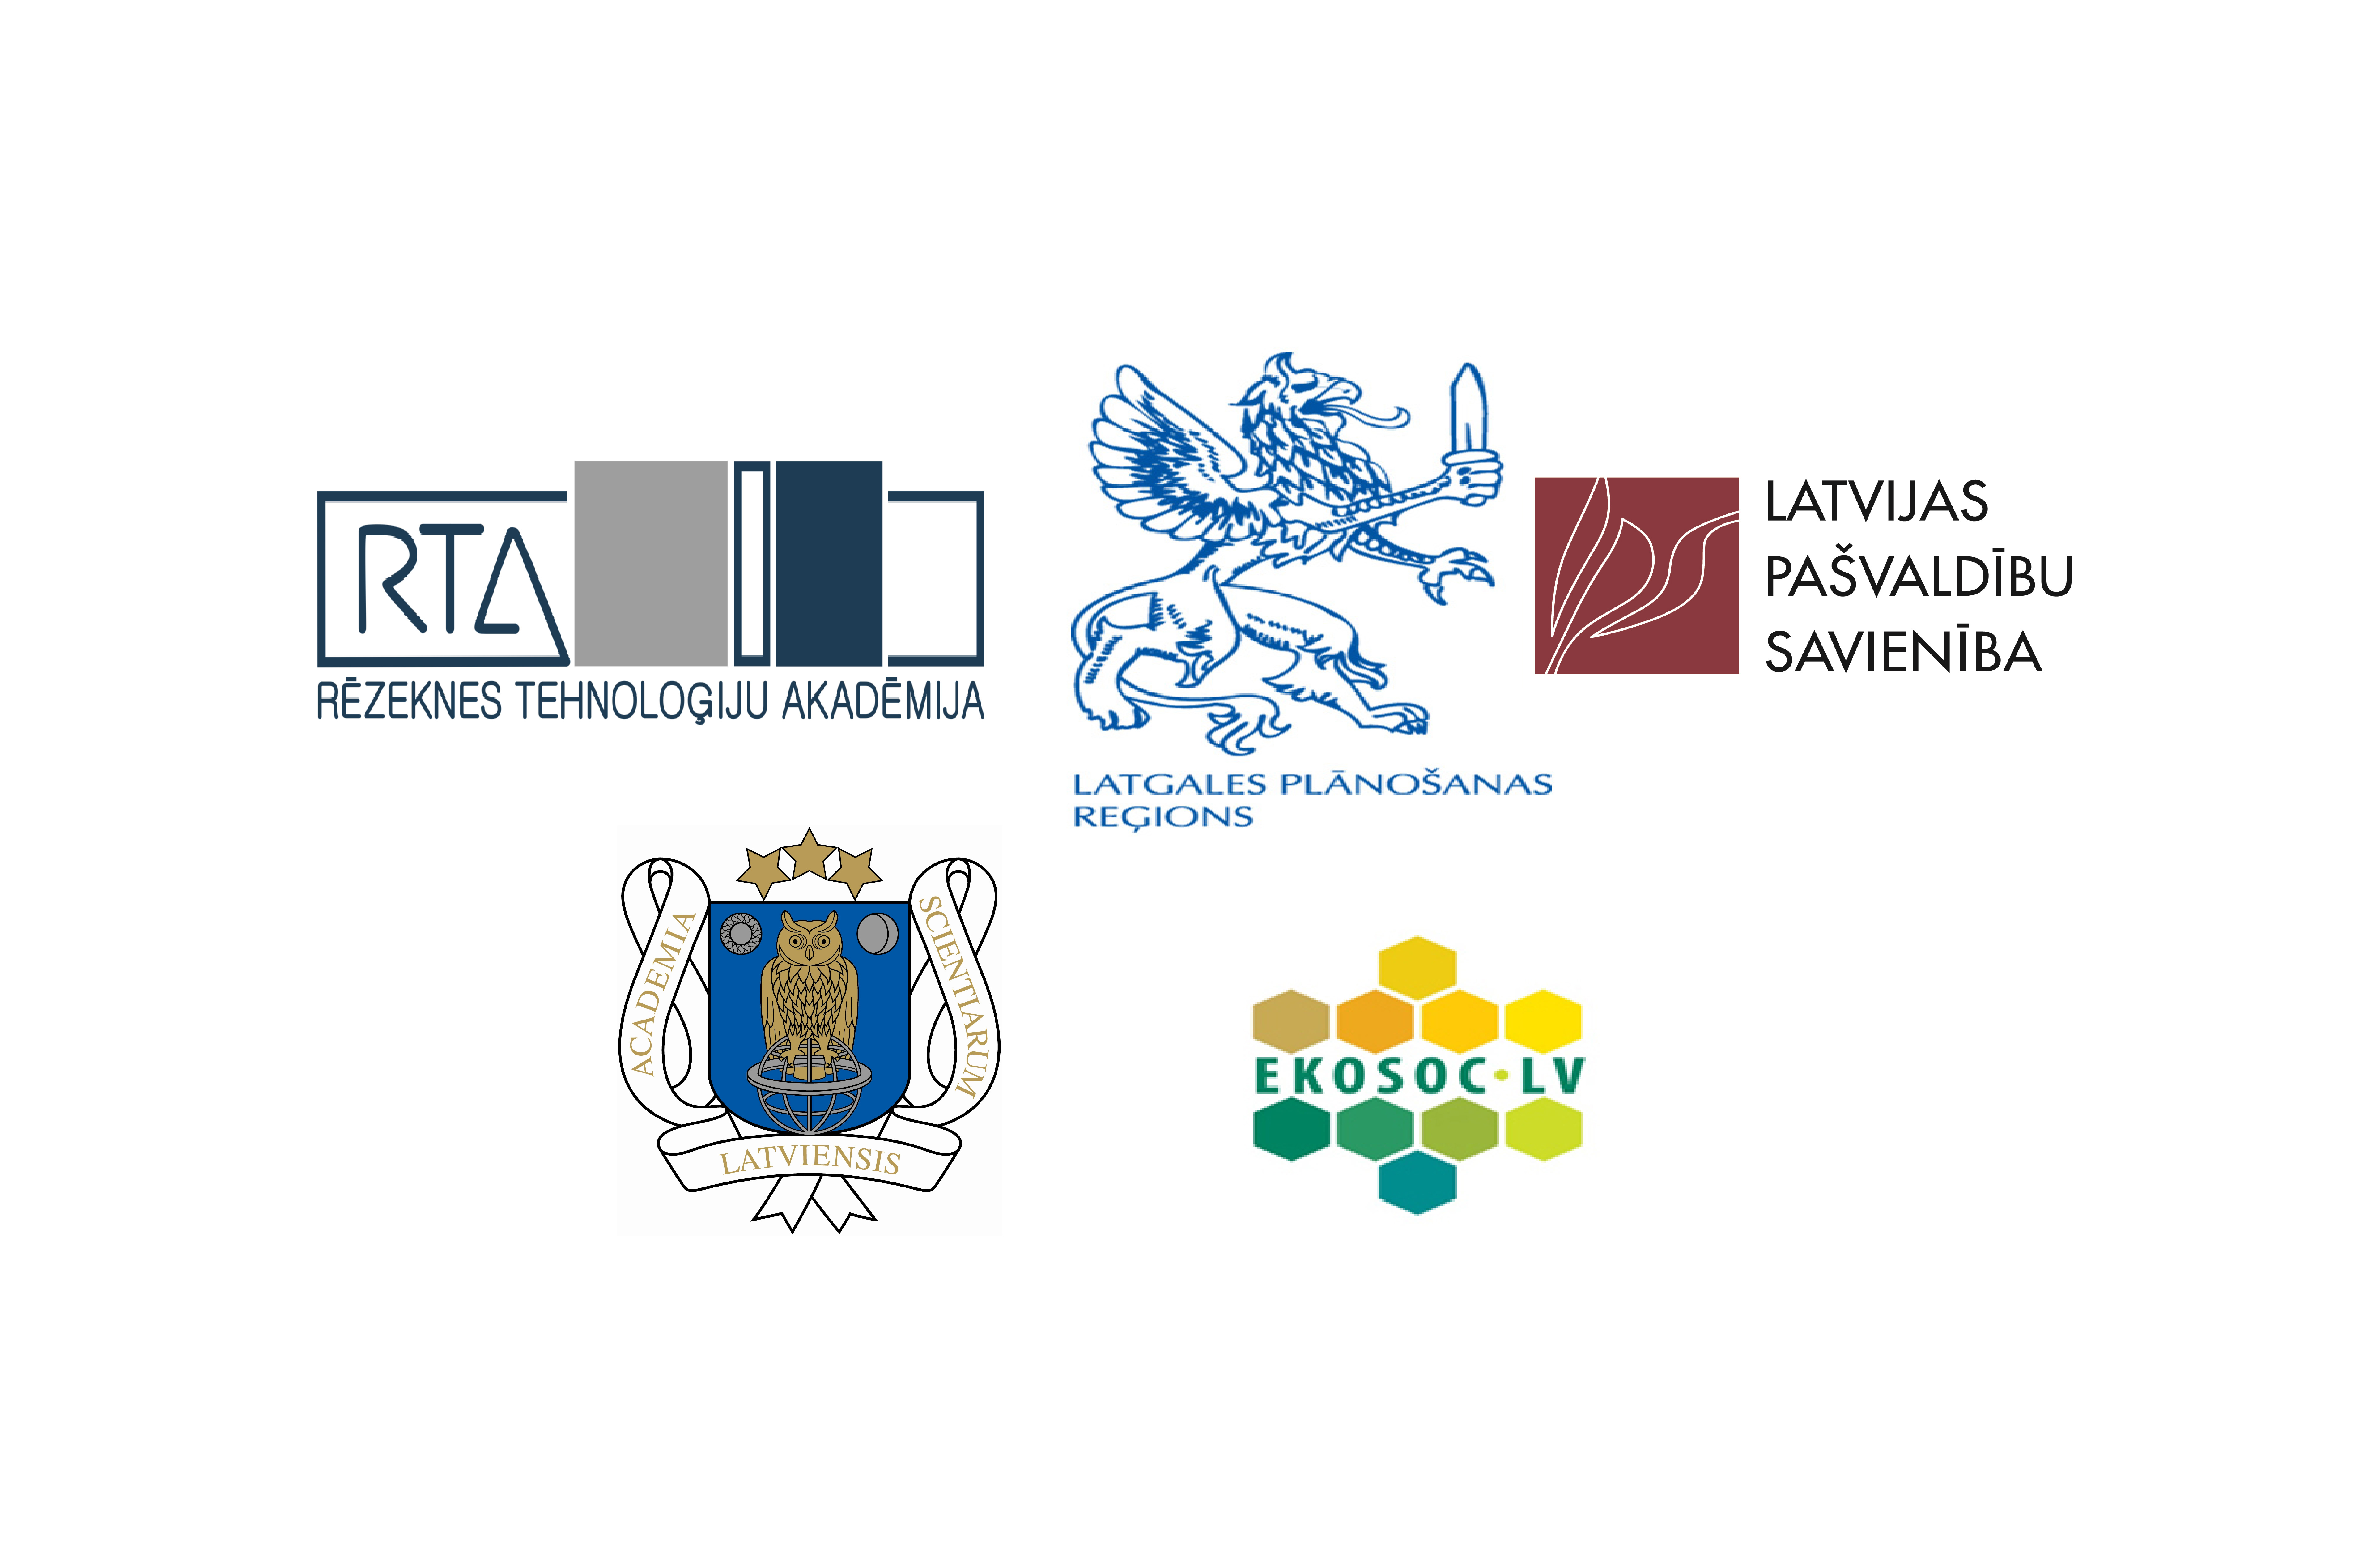 Latgales forums “Zinātne uzņēmējdarbības attīstībai reģionā”